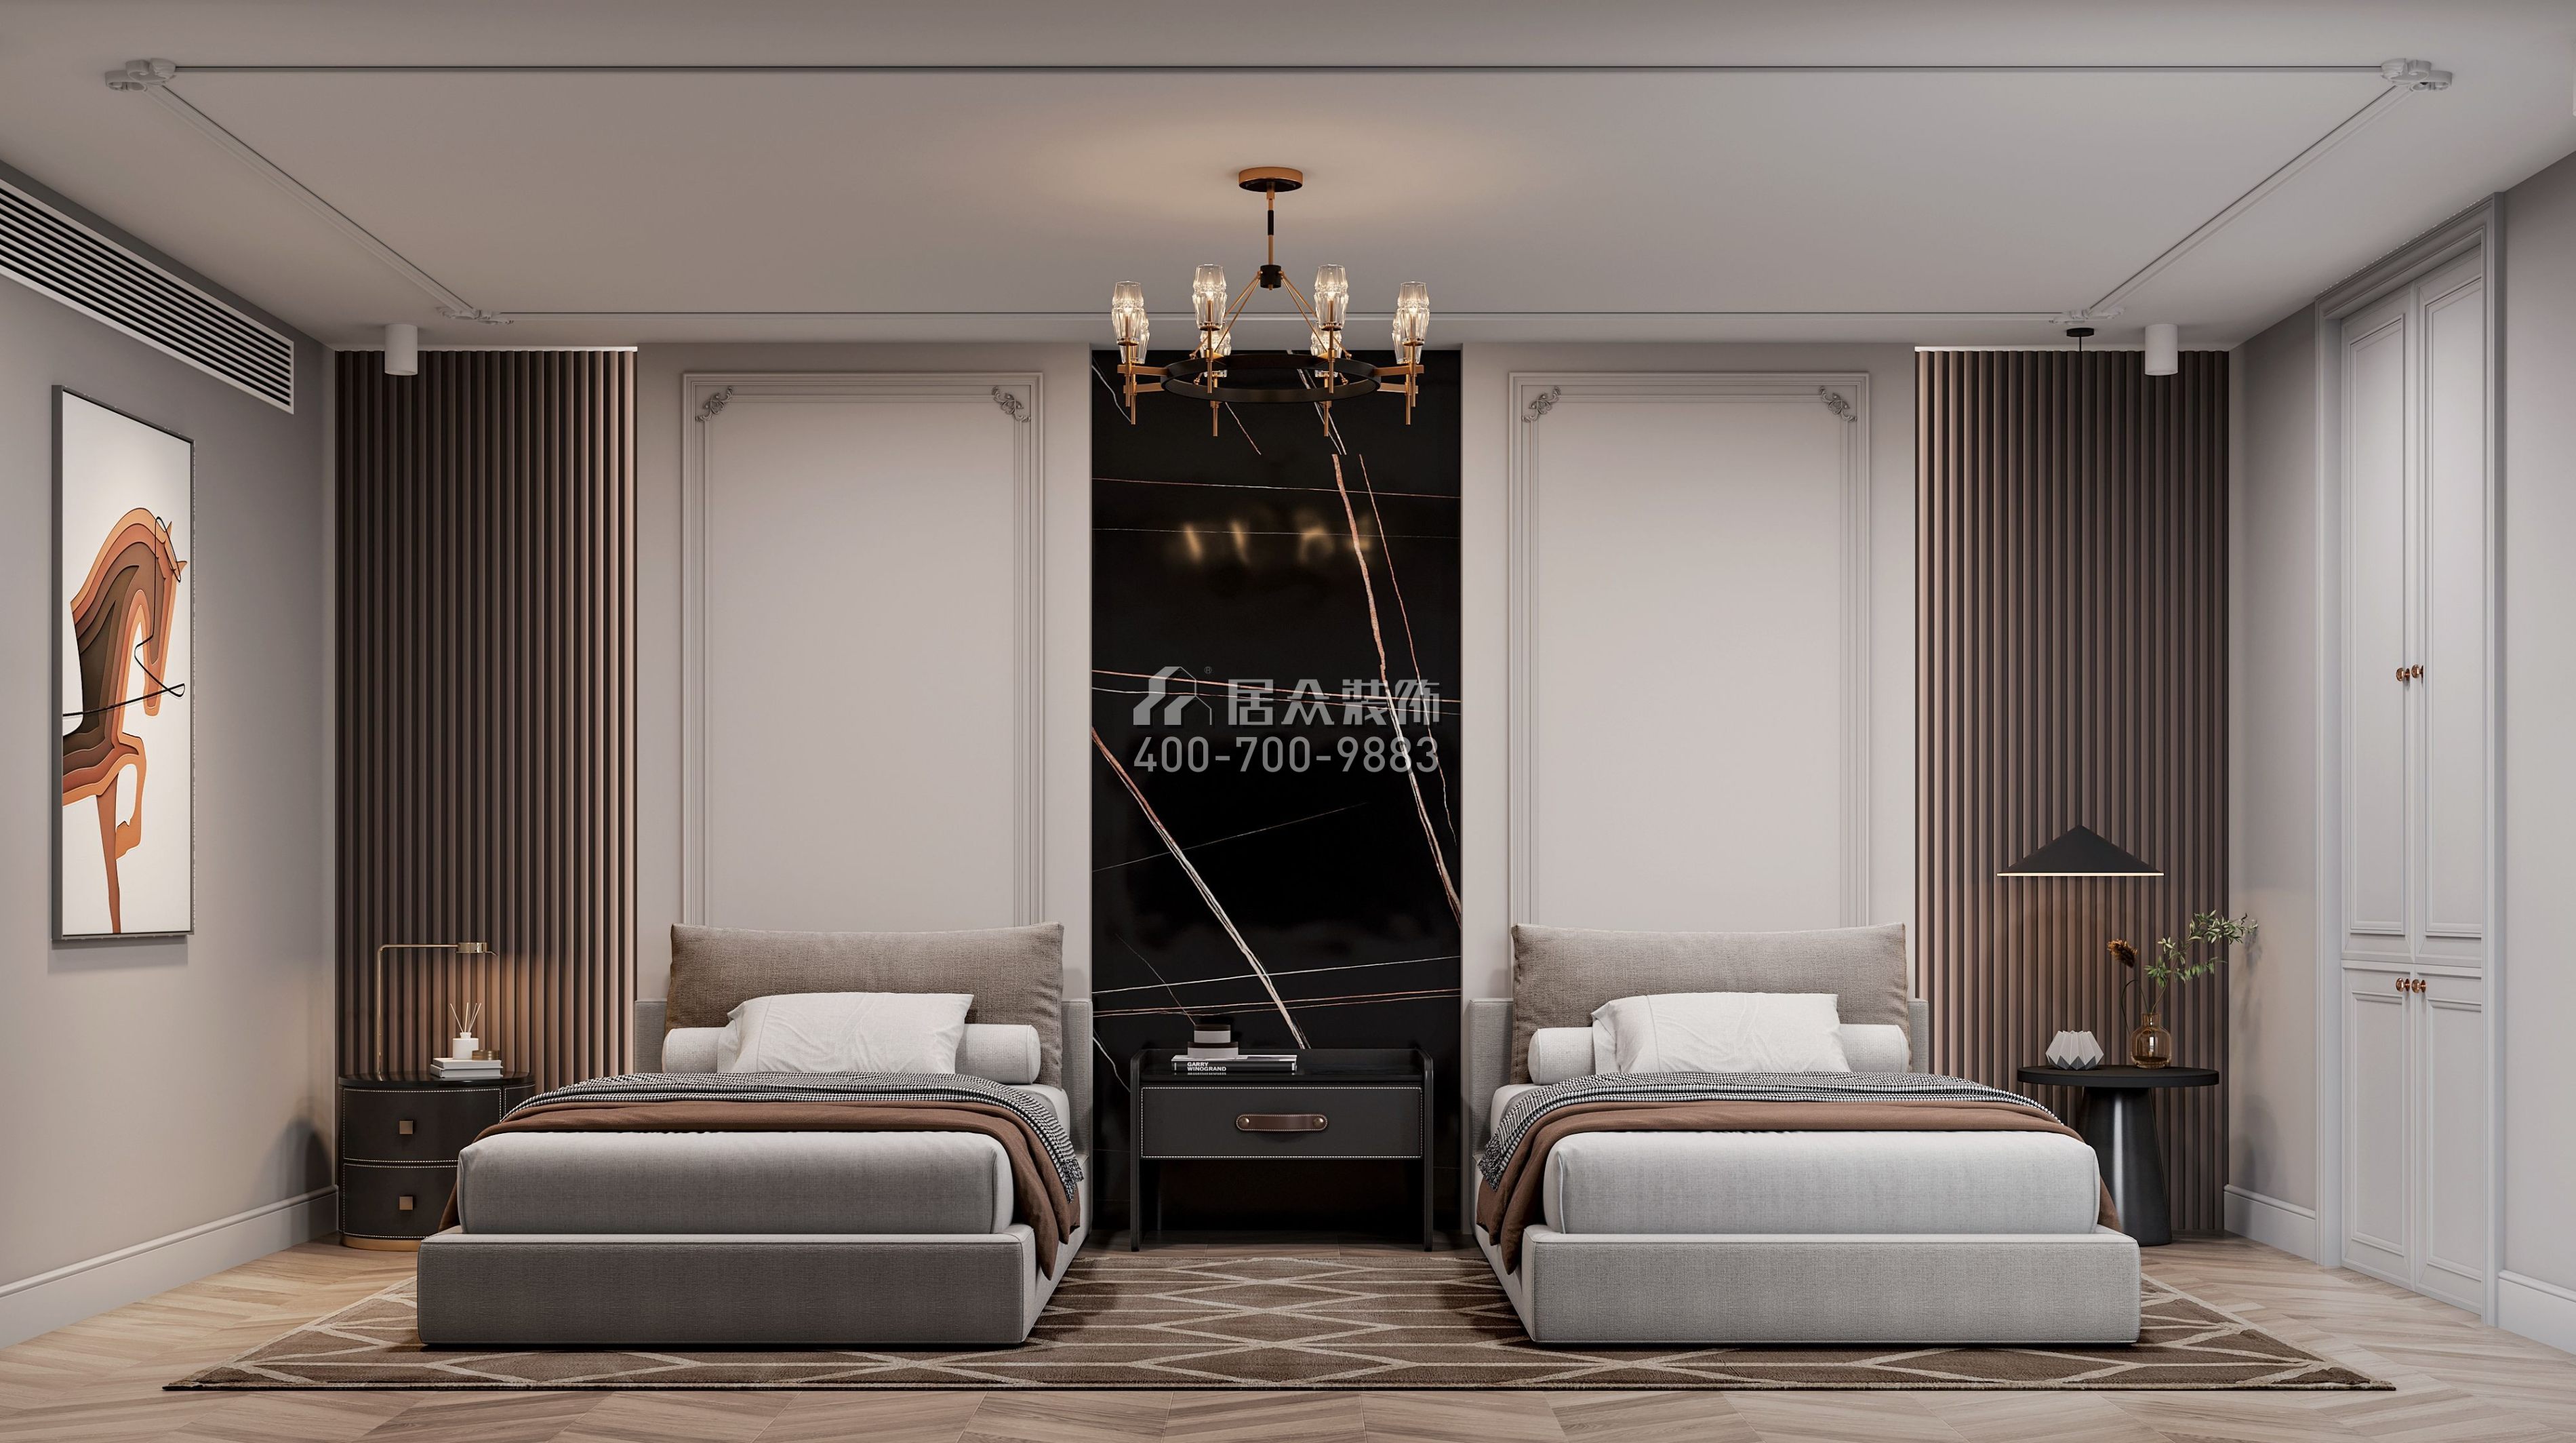 中葡商贸广场200平方米欧式风格复式户型卧室装修效果图